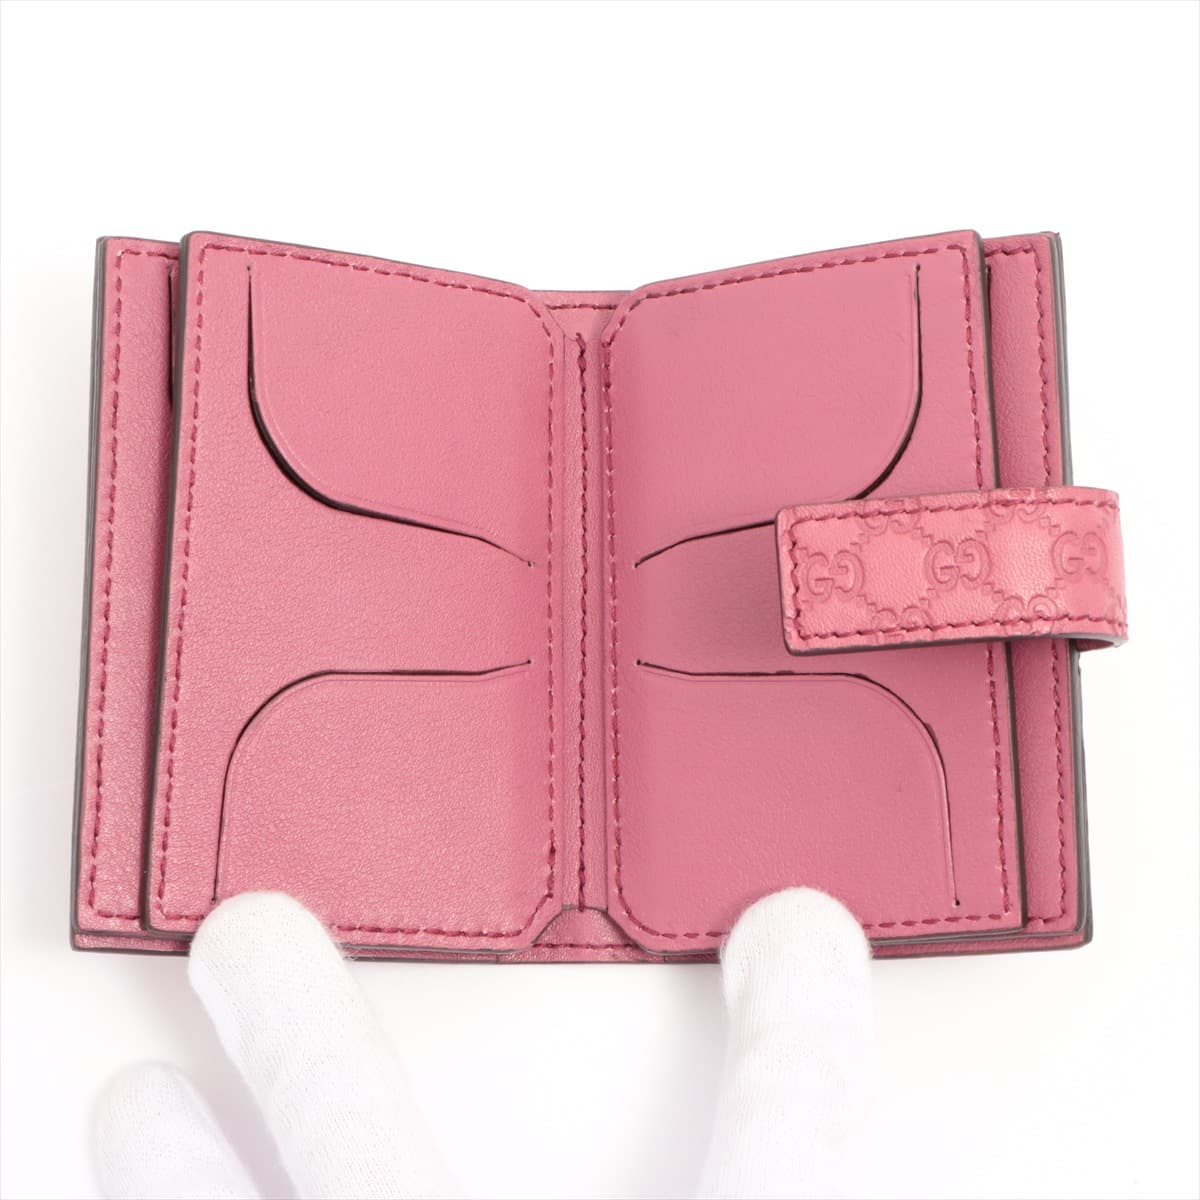 Gucci Micro Guccissima 309656 Leather Card case Purple